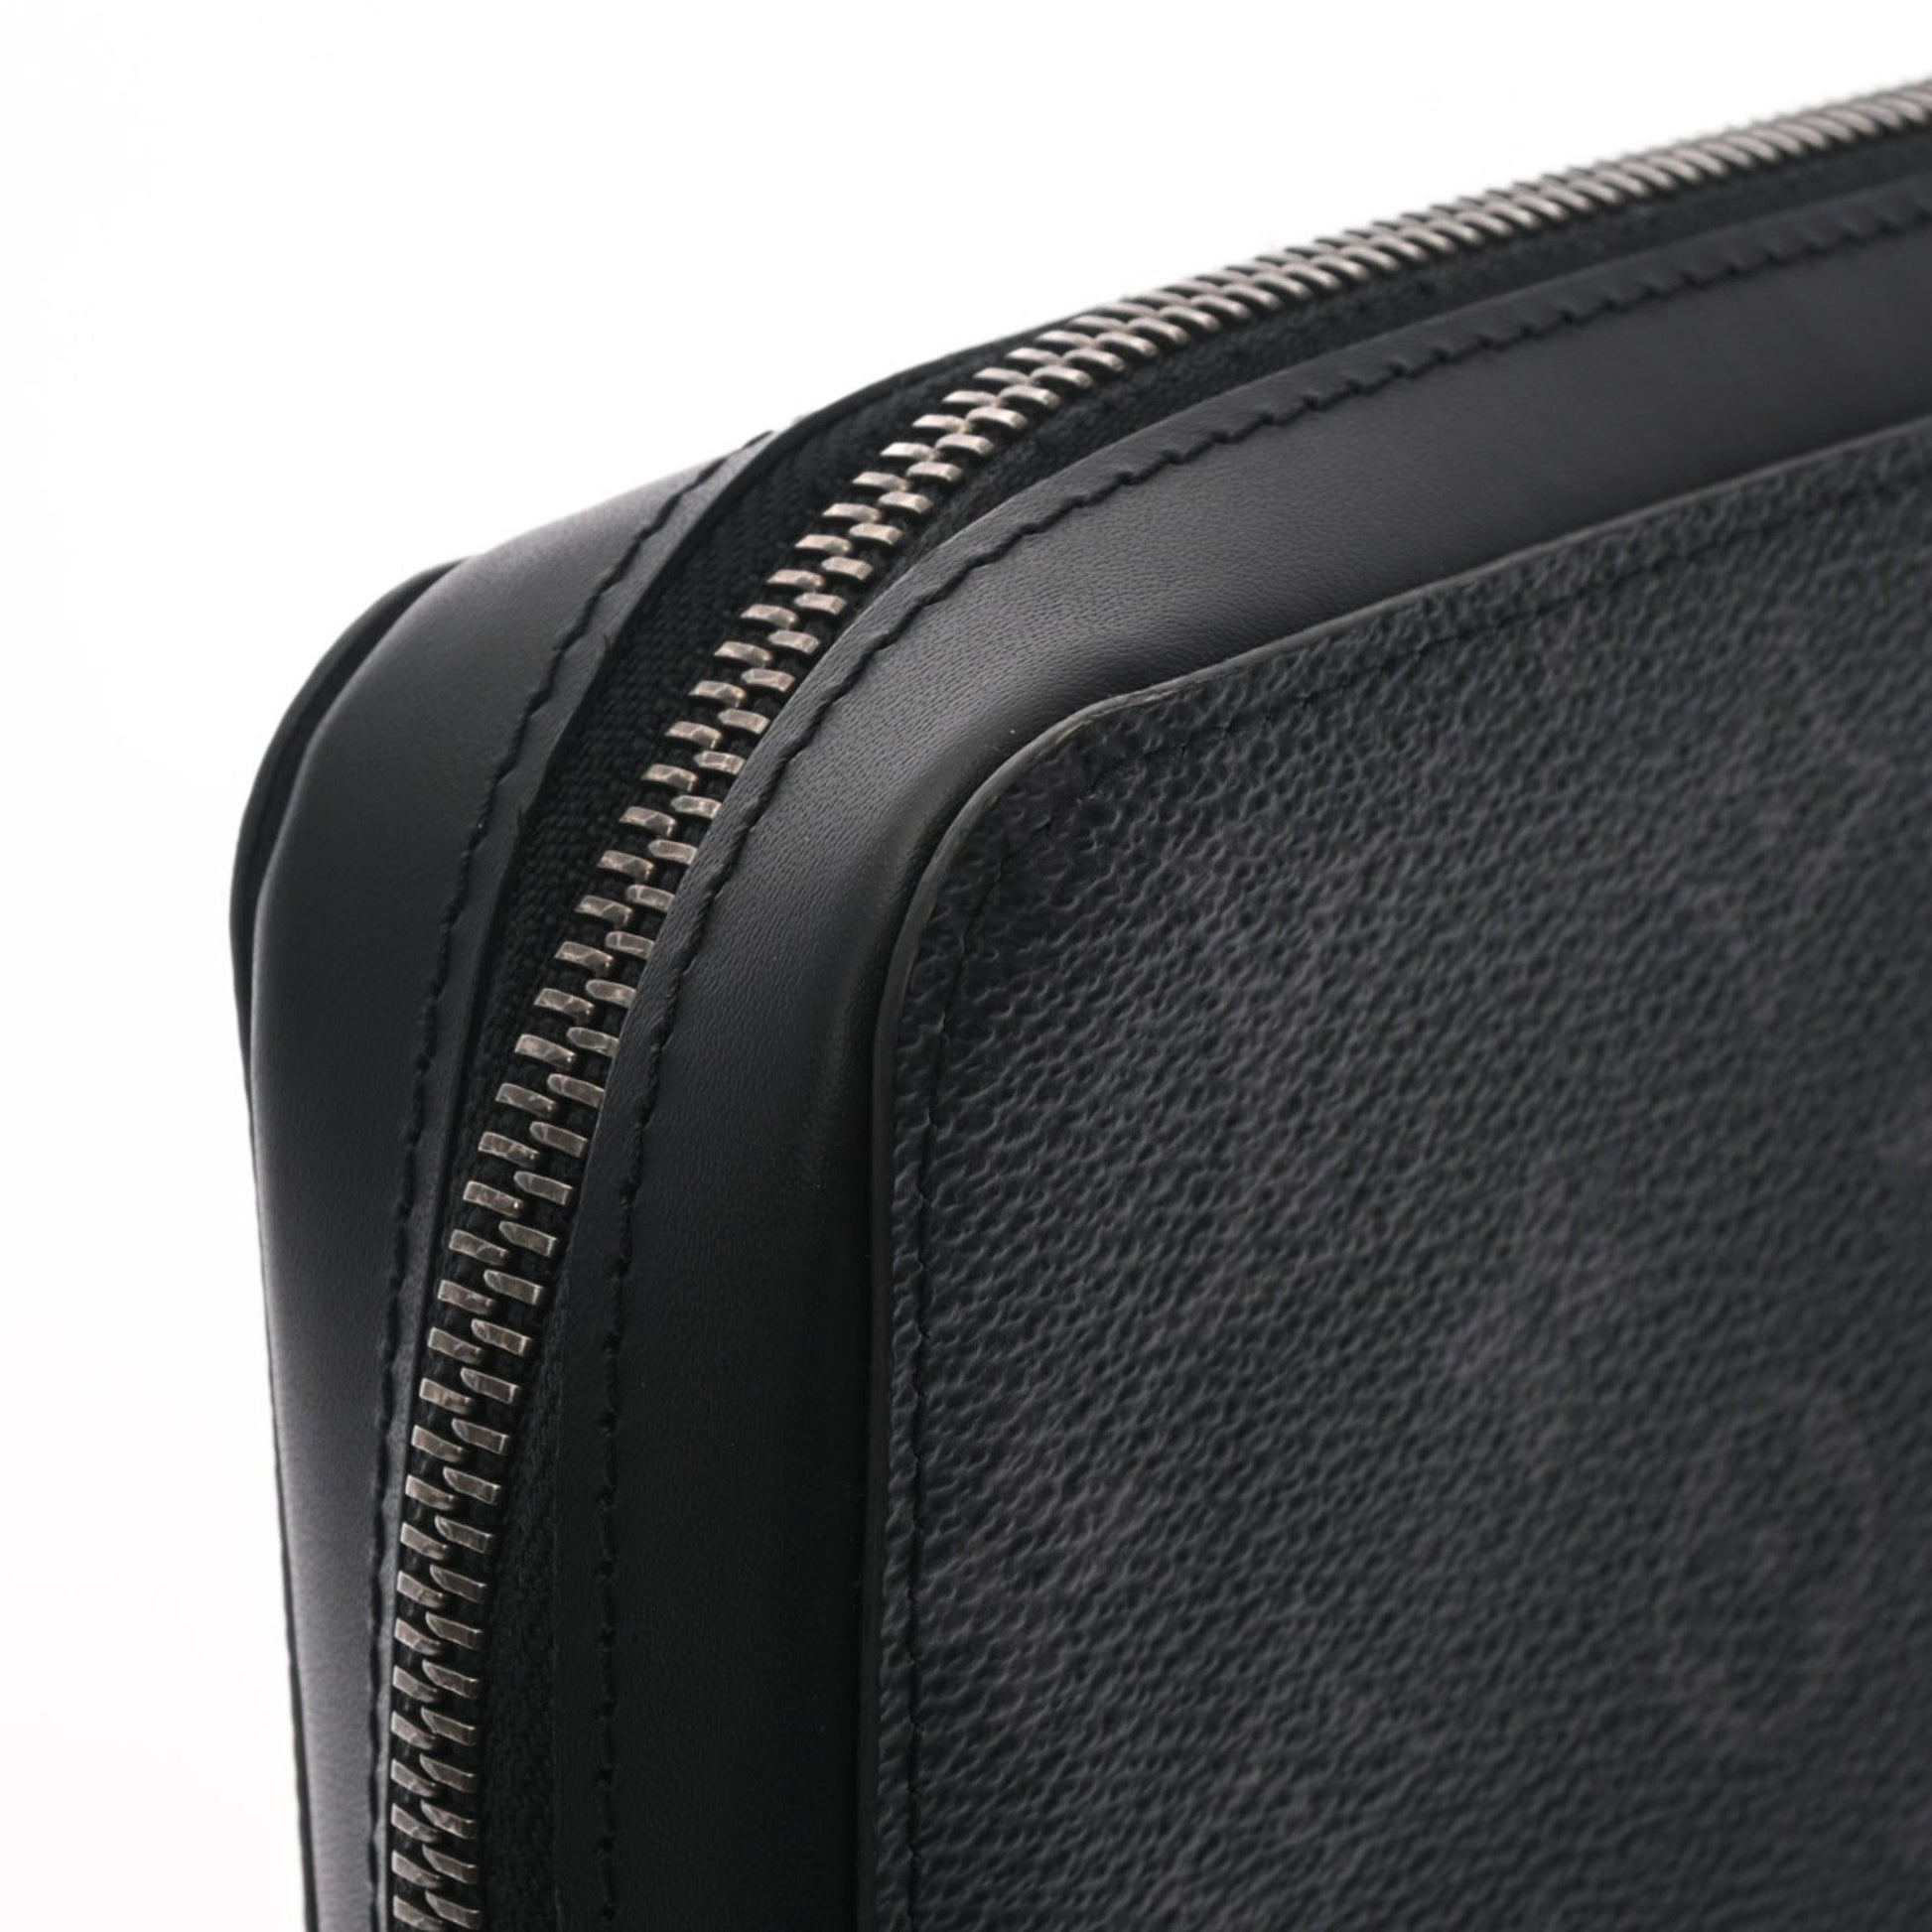 Shop Louis Vuitton Zippy Xl Wallet (PORTEFEUILLE ZIPPY XL, M61698) by  Mikrie